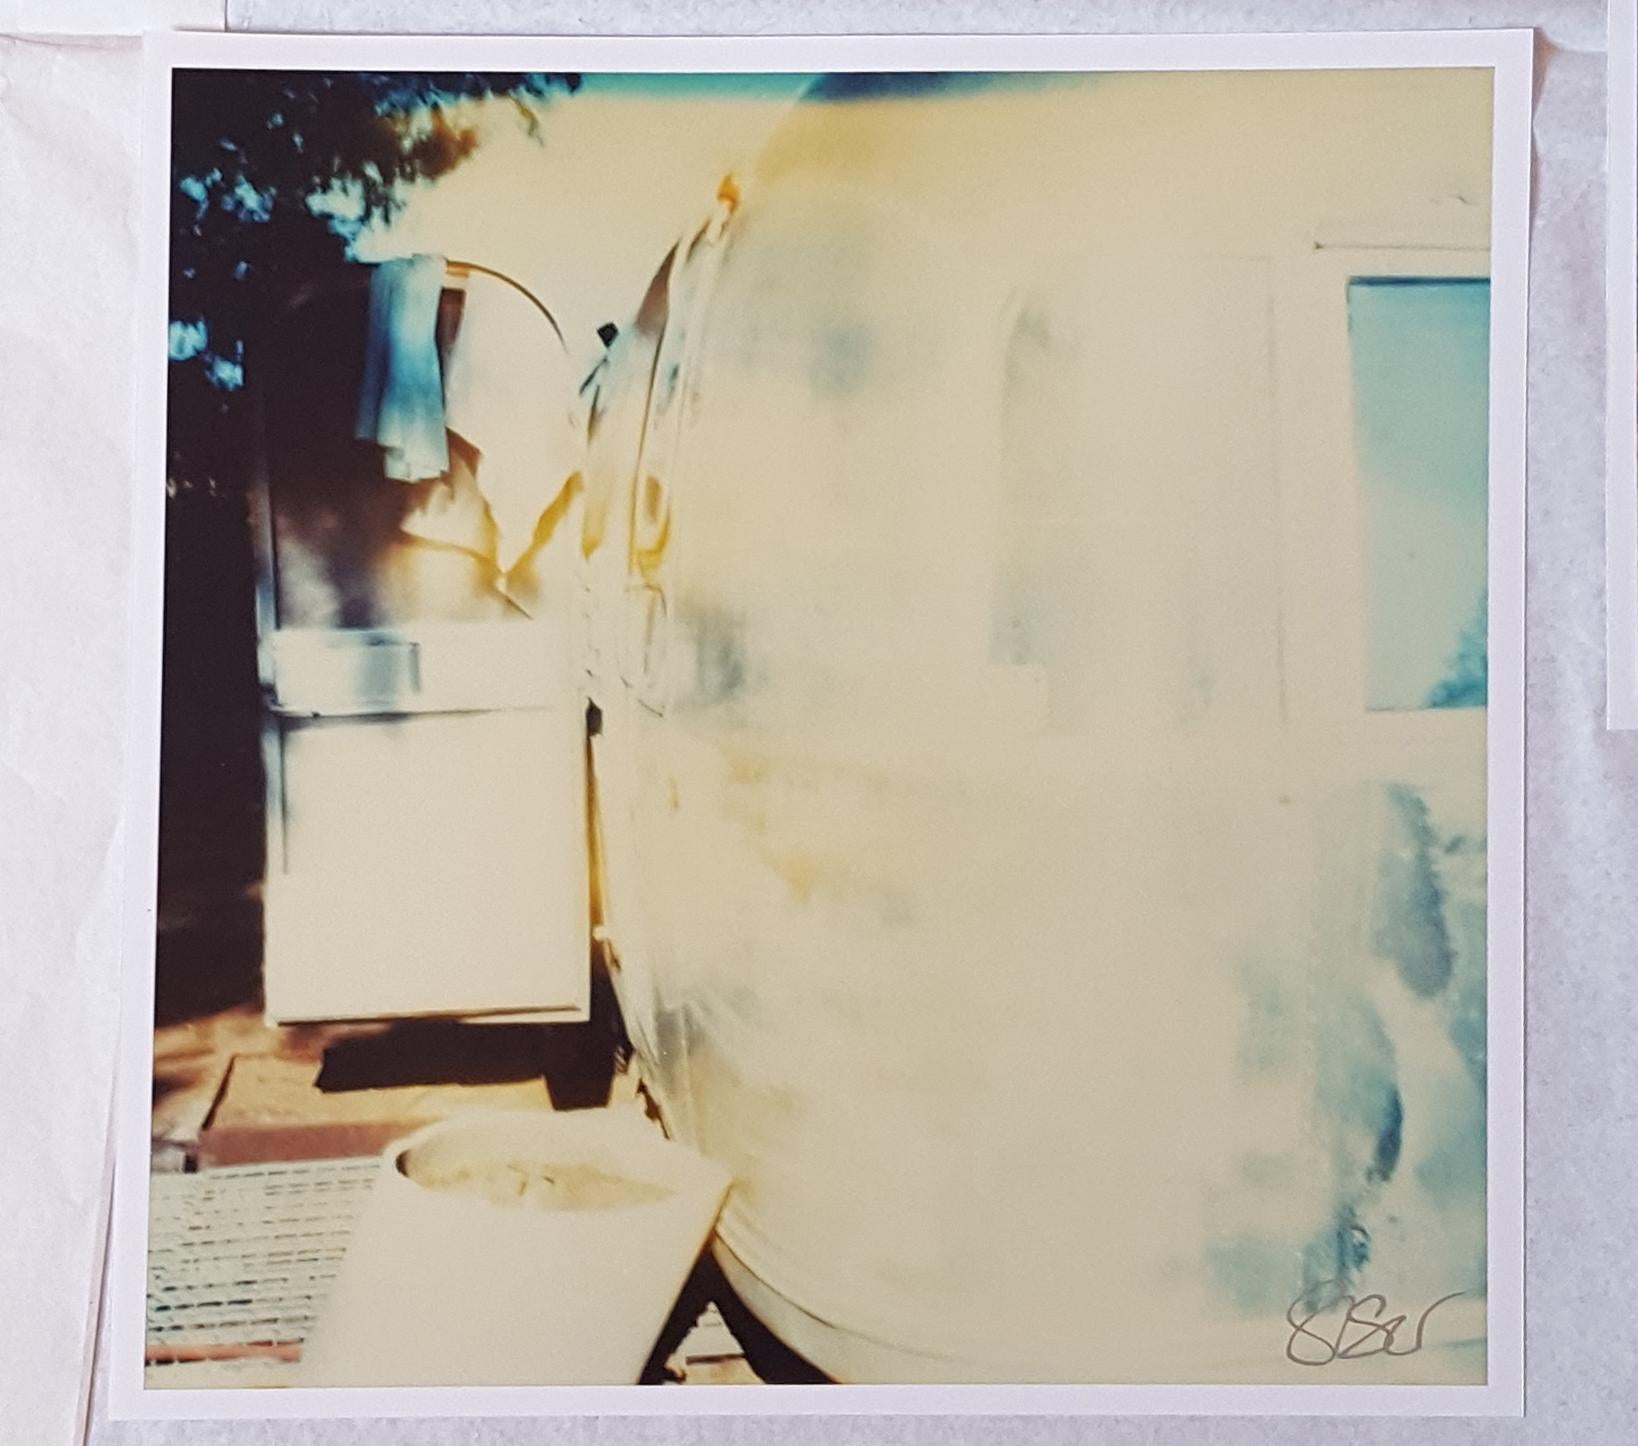 Blaues Kleid – Teil III (Sidewinder) – nach einem Polaroid-Original – Proof